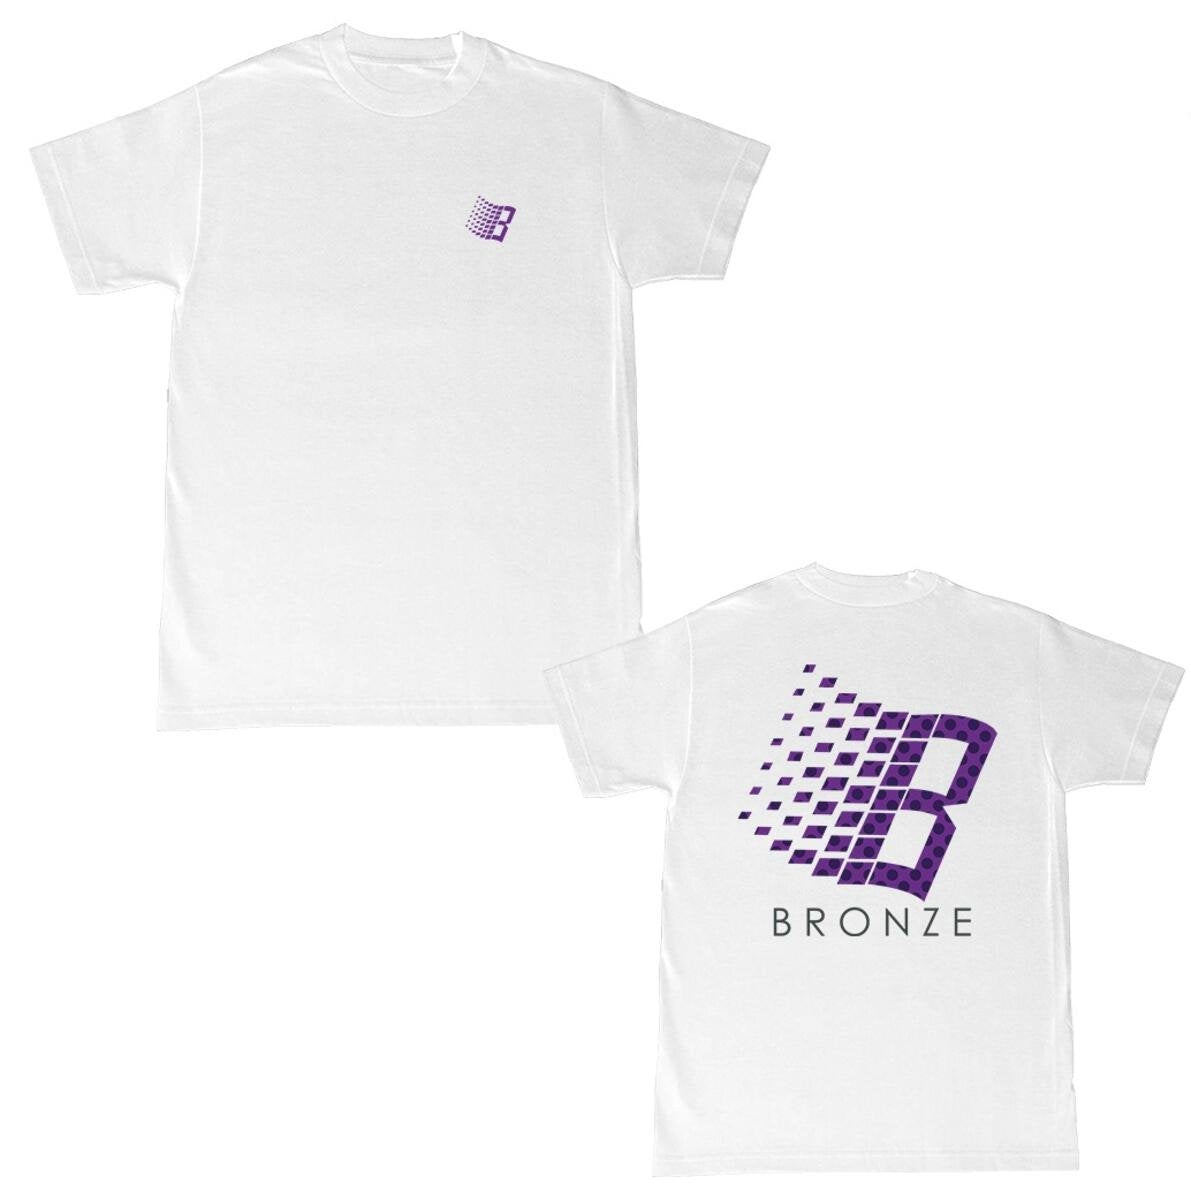 Bronze - Polka Dot Logo Tshirt White